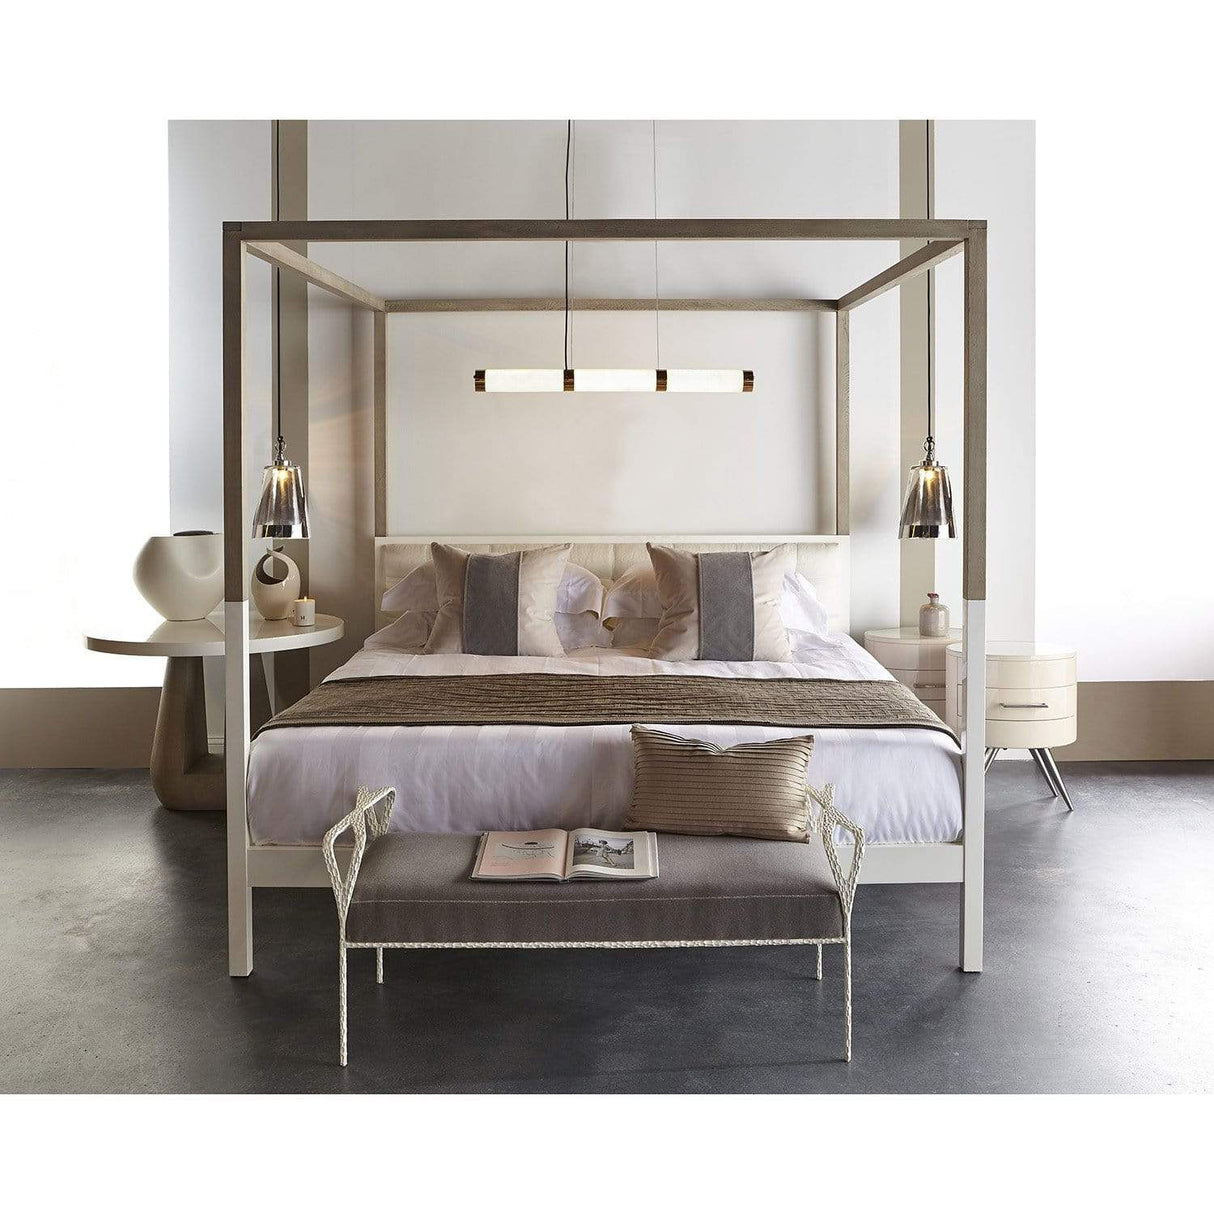 Kelly Hoppen Duke Poster Bed Furniture